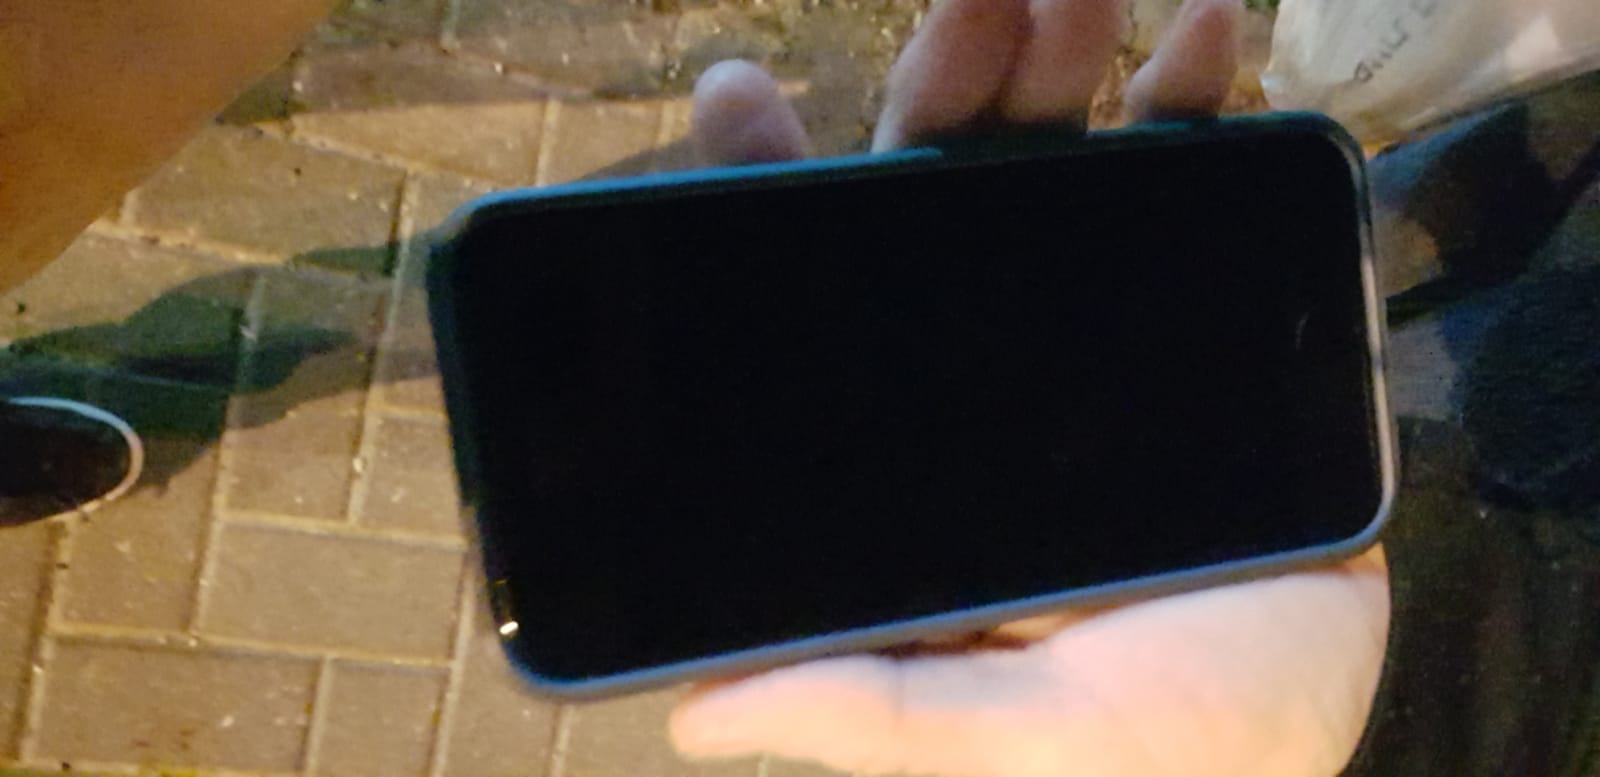 תמונה 3 ,איפון sE למכירה בתל אביב סלולרי  סמארטפונים